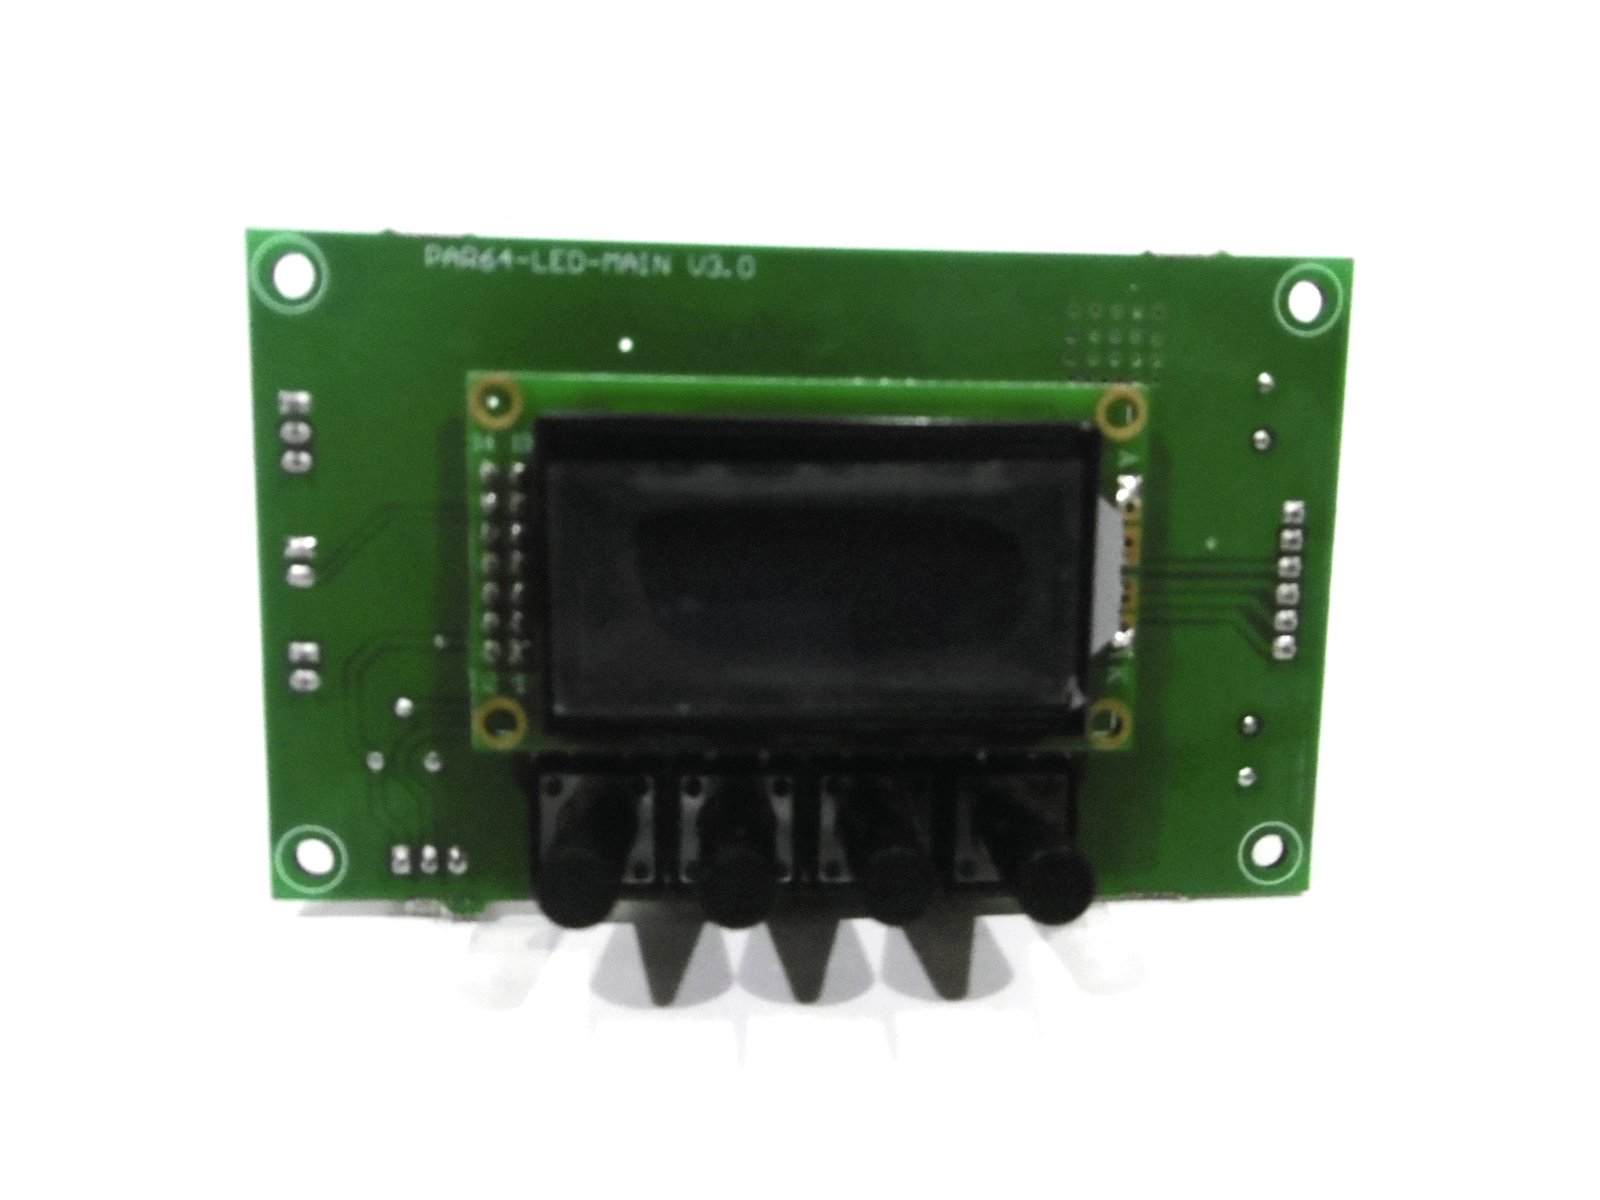 Pcb (Display) LED PLL-480 CW/WW (PAR64-LED-MAIN V3.0) MAIN 6 pol